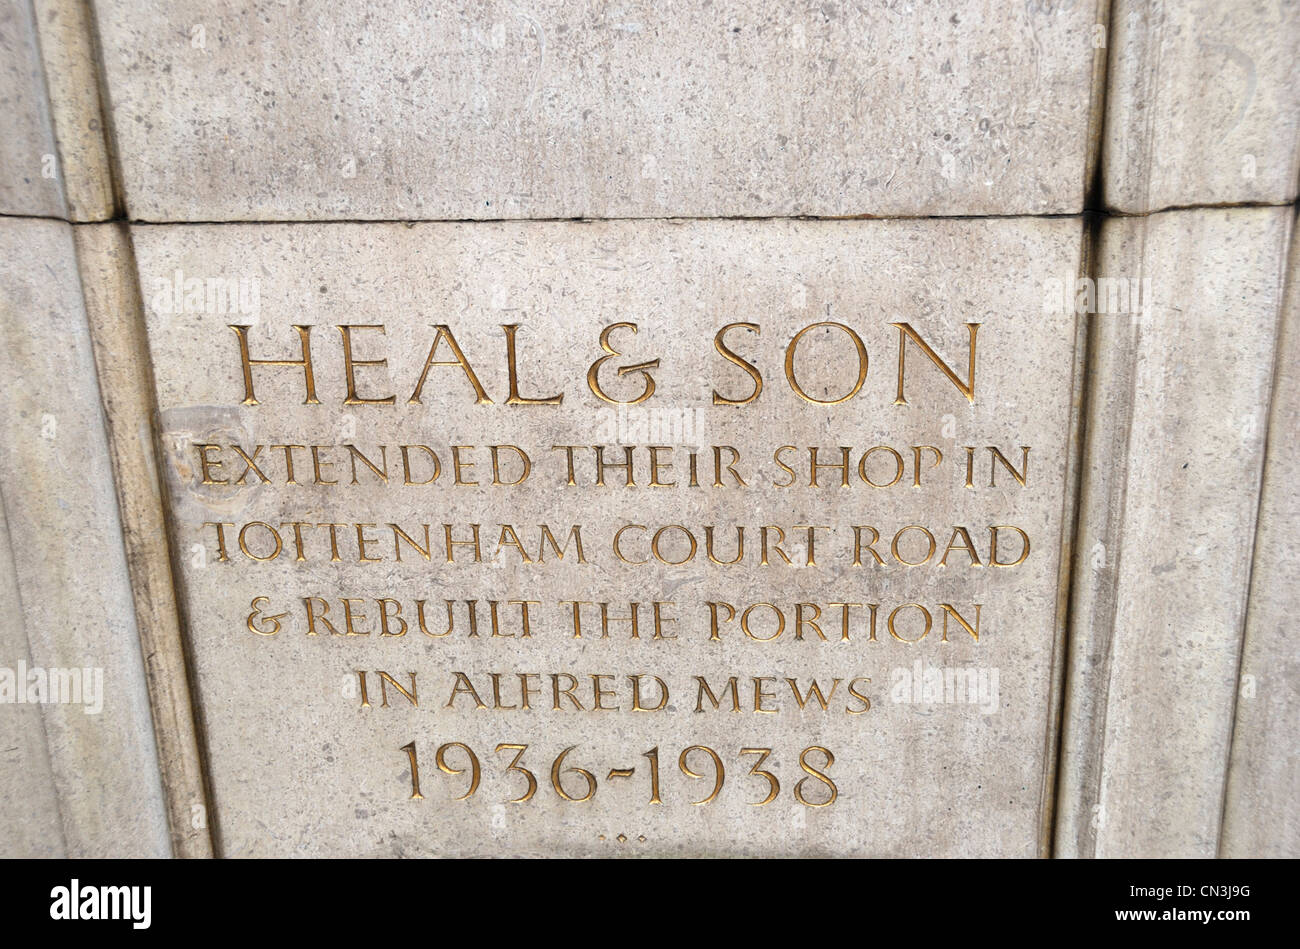 Stein zum Gedenken an die Erweiterung des Heal und Sohn Shop in Tottenham Court Road, London, UK Stockfoto